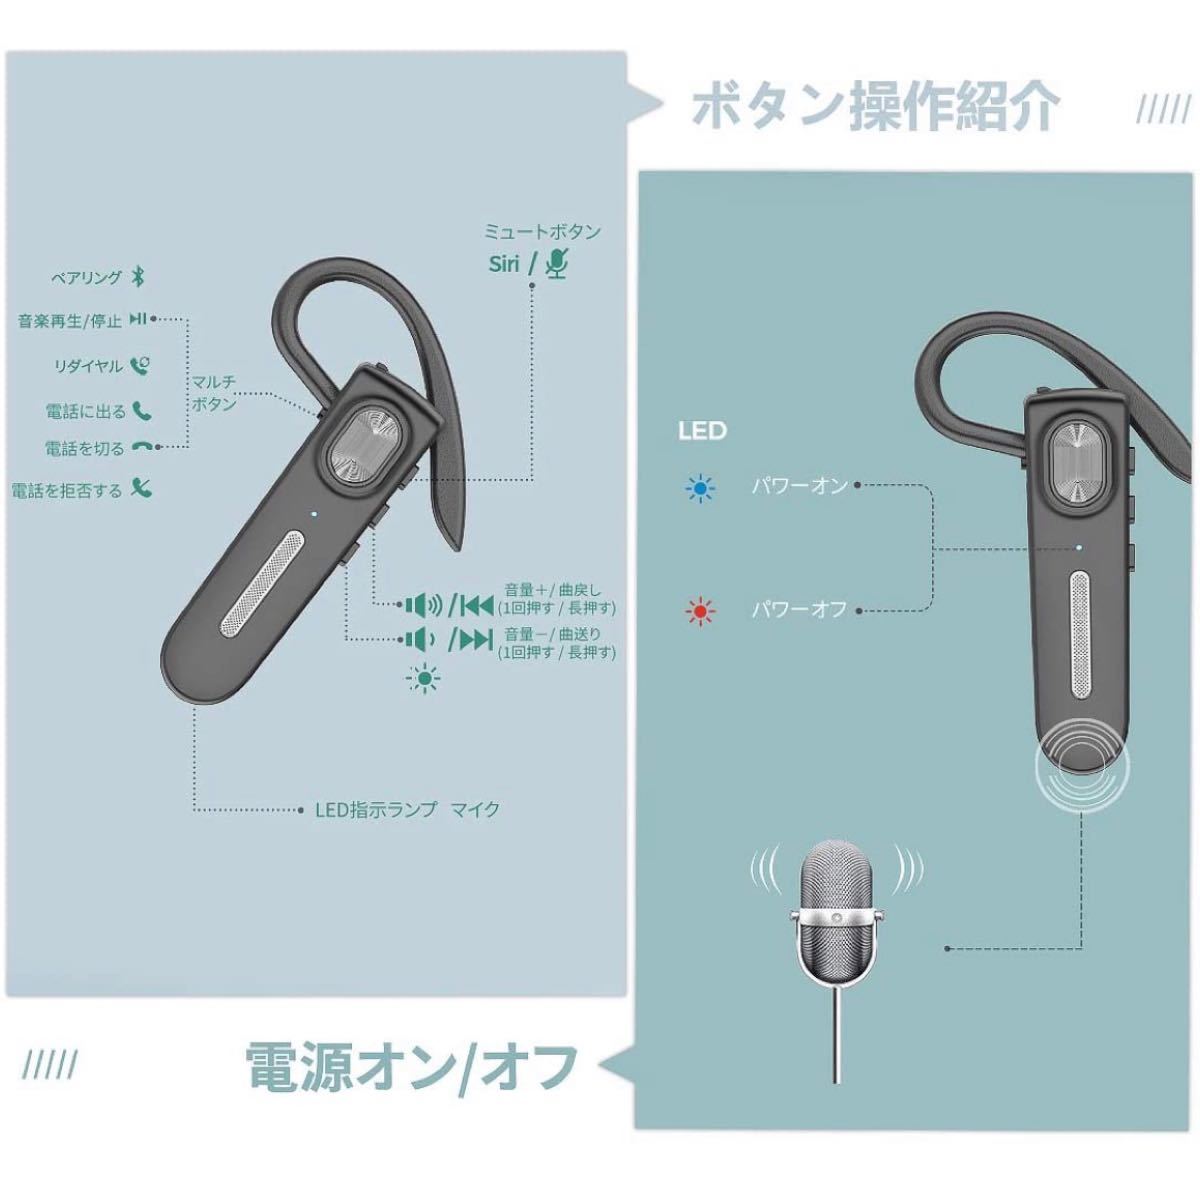 Bluetoothヘッドセット V5.0 ワイヤレスイヤホン 高音質 マイク内蔵 ハンズフリー通話 ワイヤレス マイク